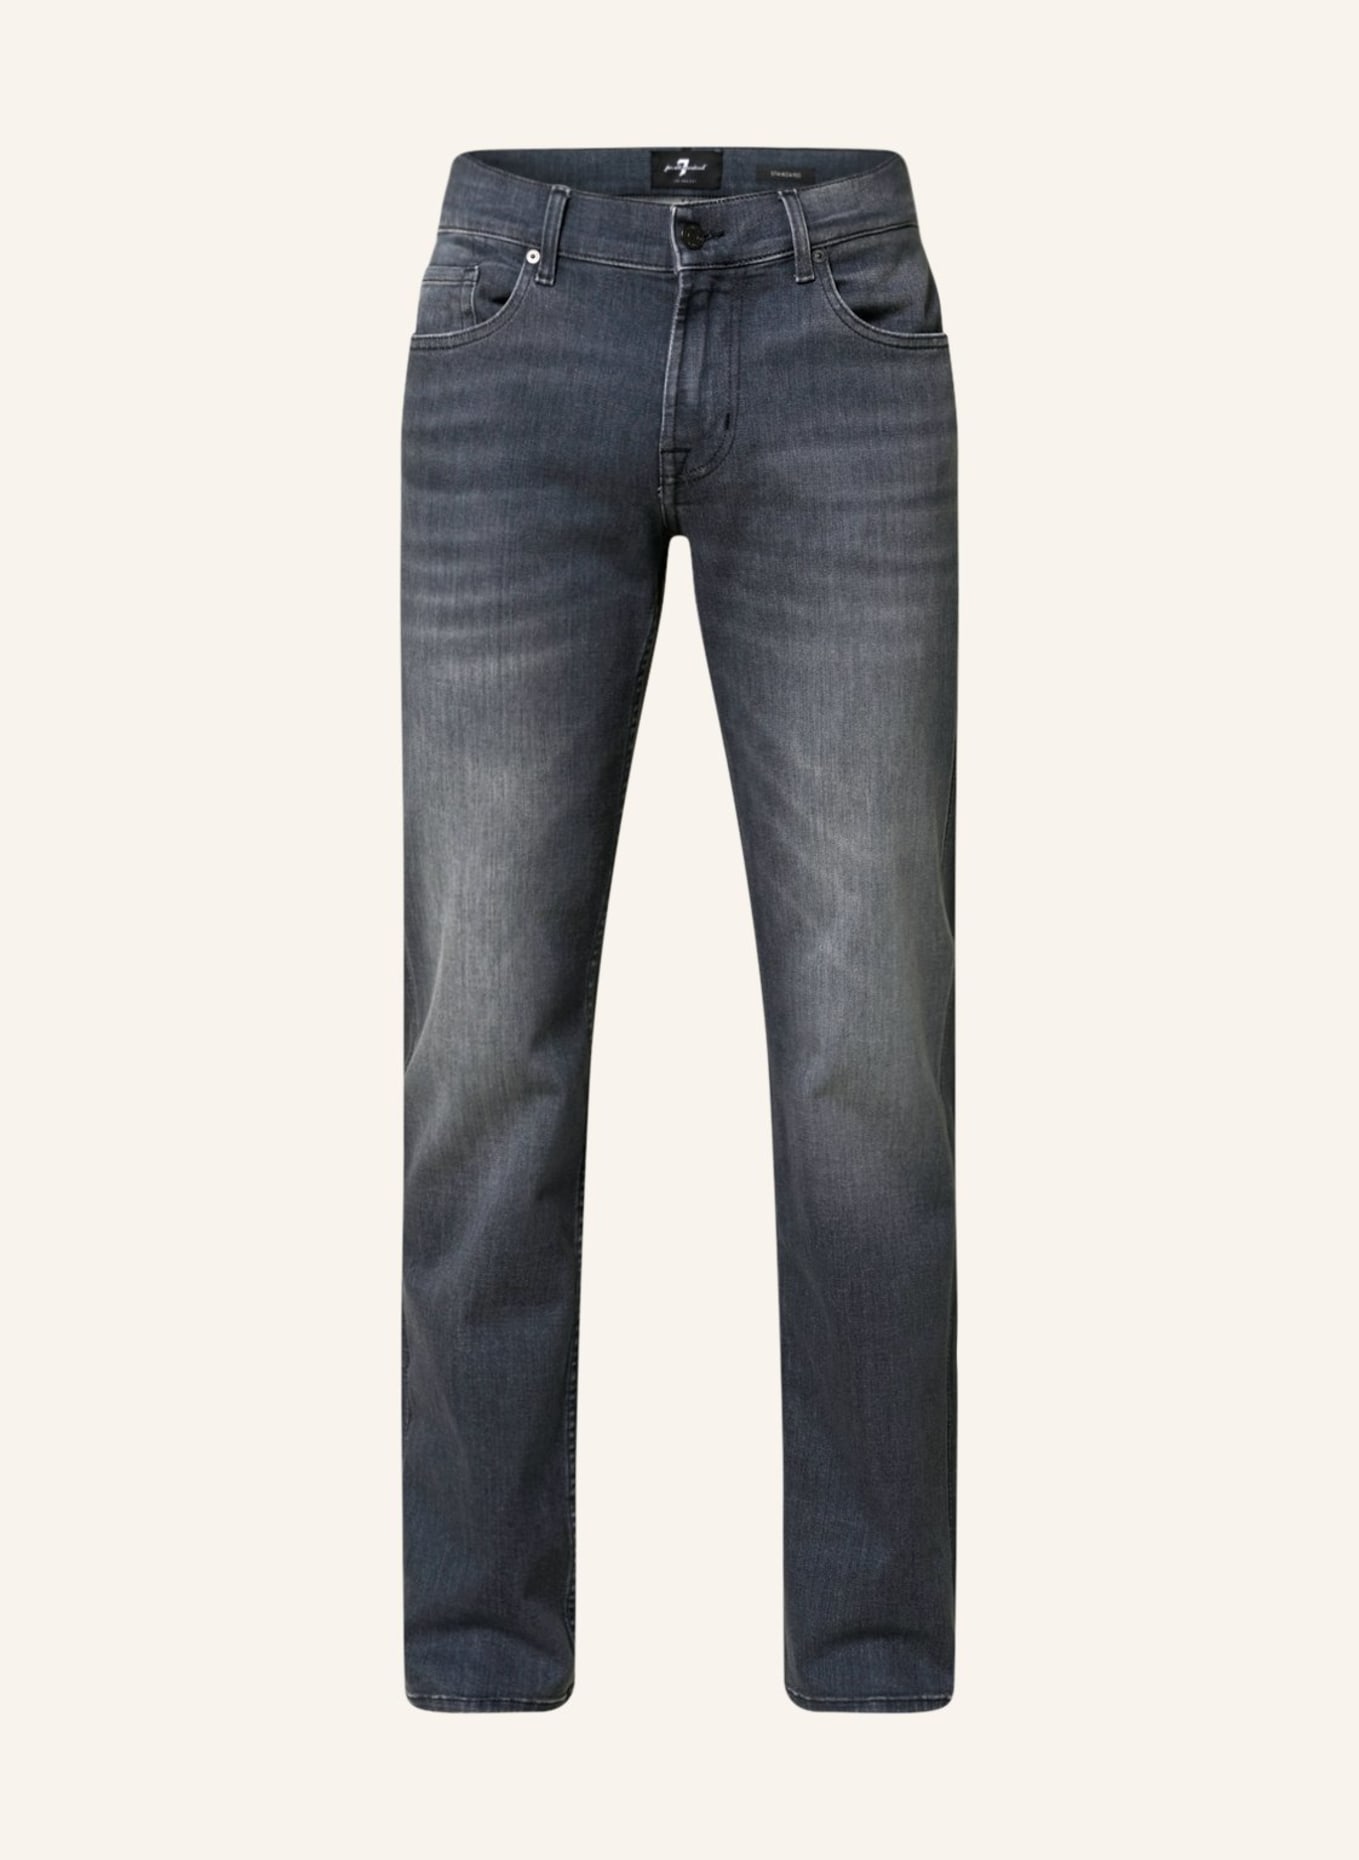 7 for all mankind Jeans STANDARD regular fit , Color: GREY (Image 1)